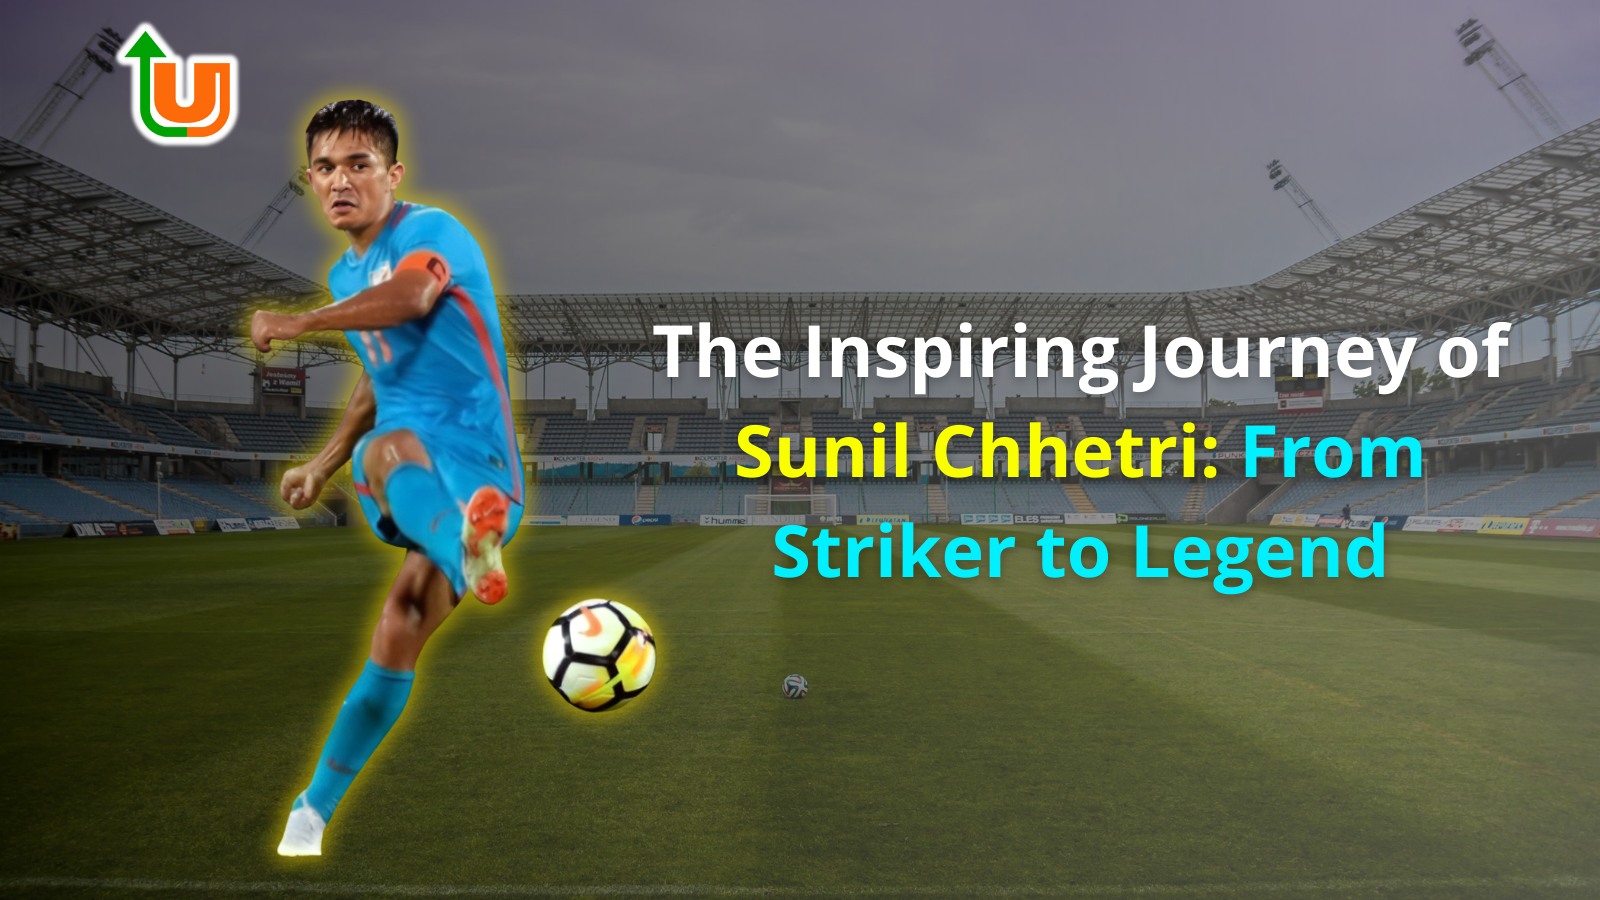 The Inspiring Journey of Sunil Chhetri: From Striker to Legend